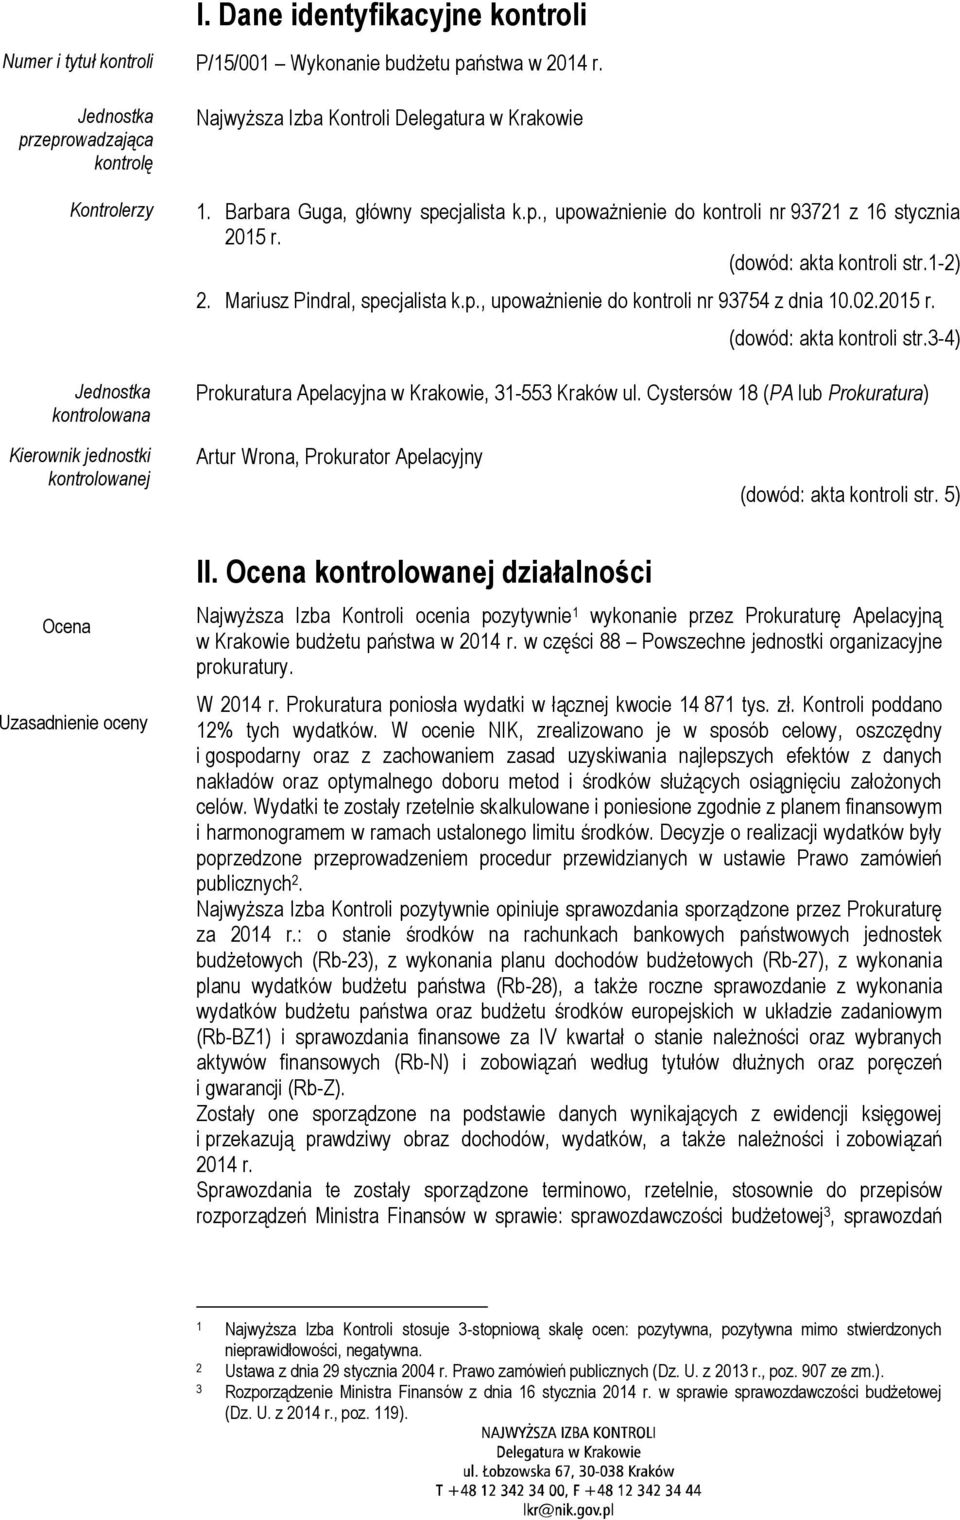 (dowód: akta kontroli str.1-2) 2. Mariusz Pindral, specjalista k.p., upoważnienie do kontroli nr 93754 z dnia 10.02.2015 r. (dowód: akta kontroli str.